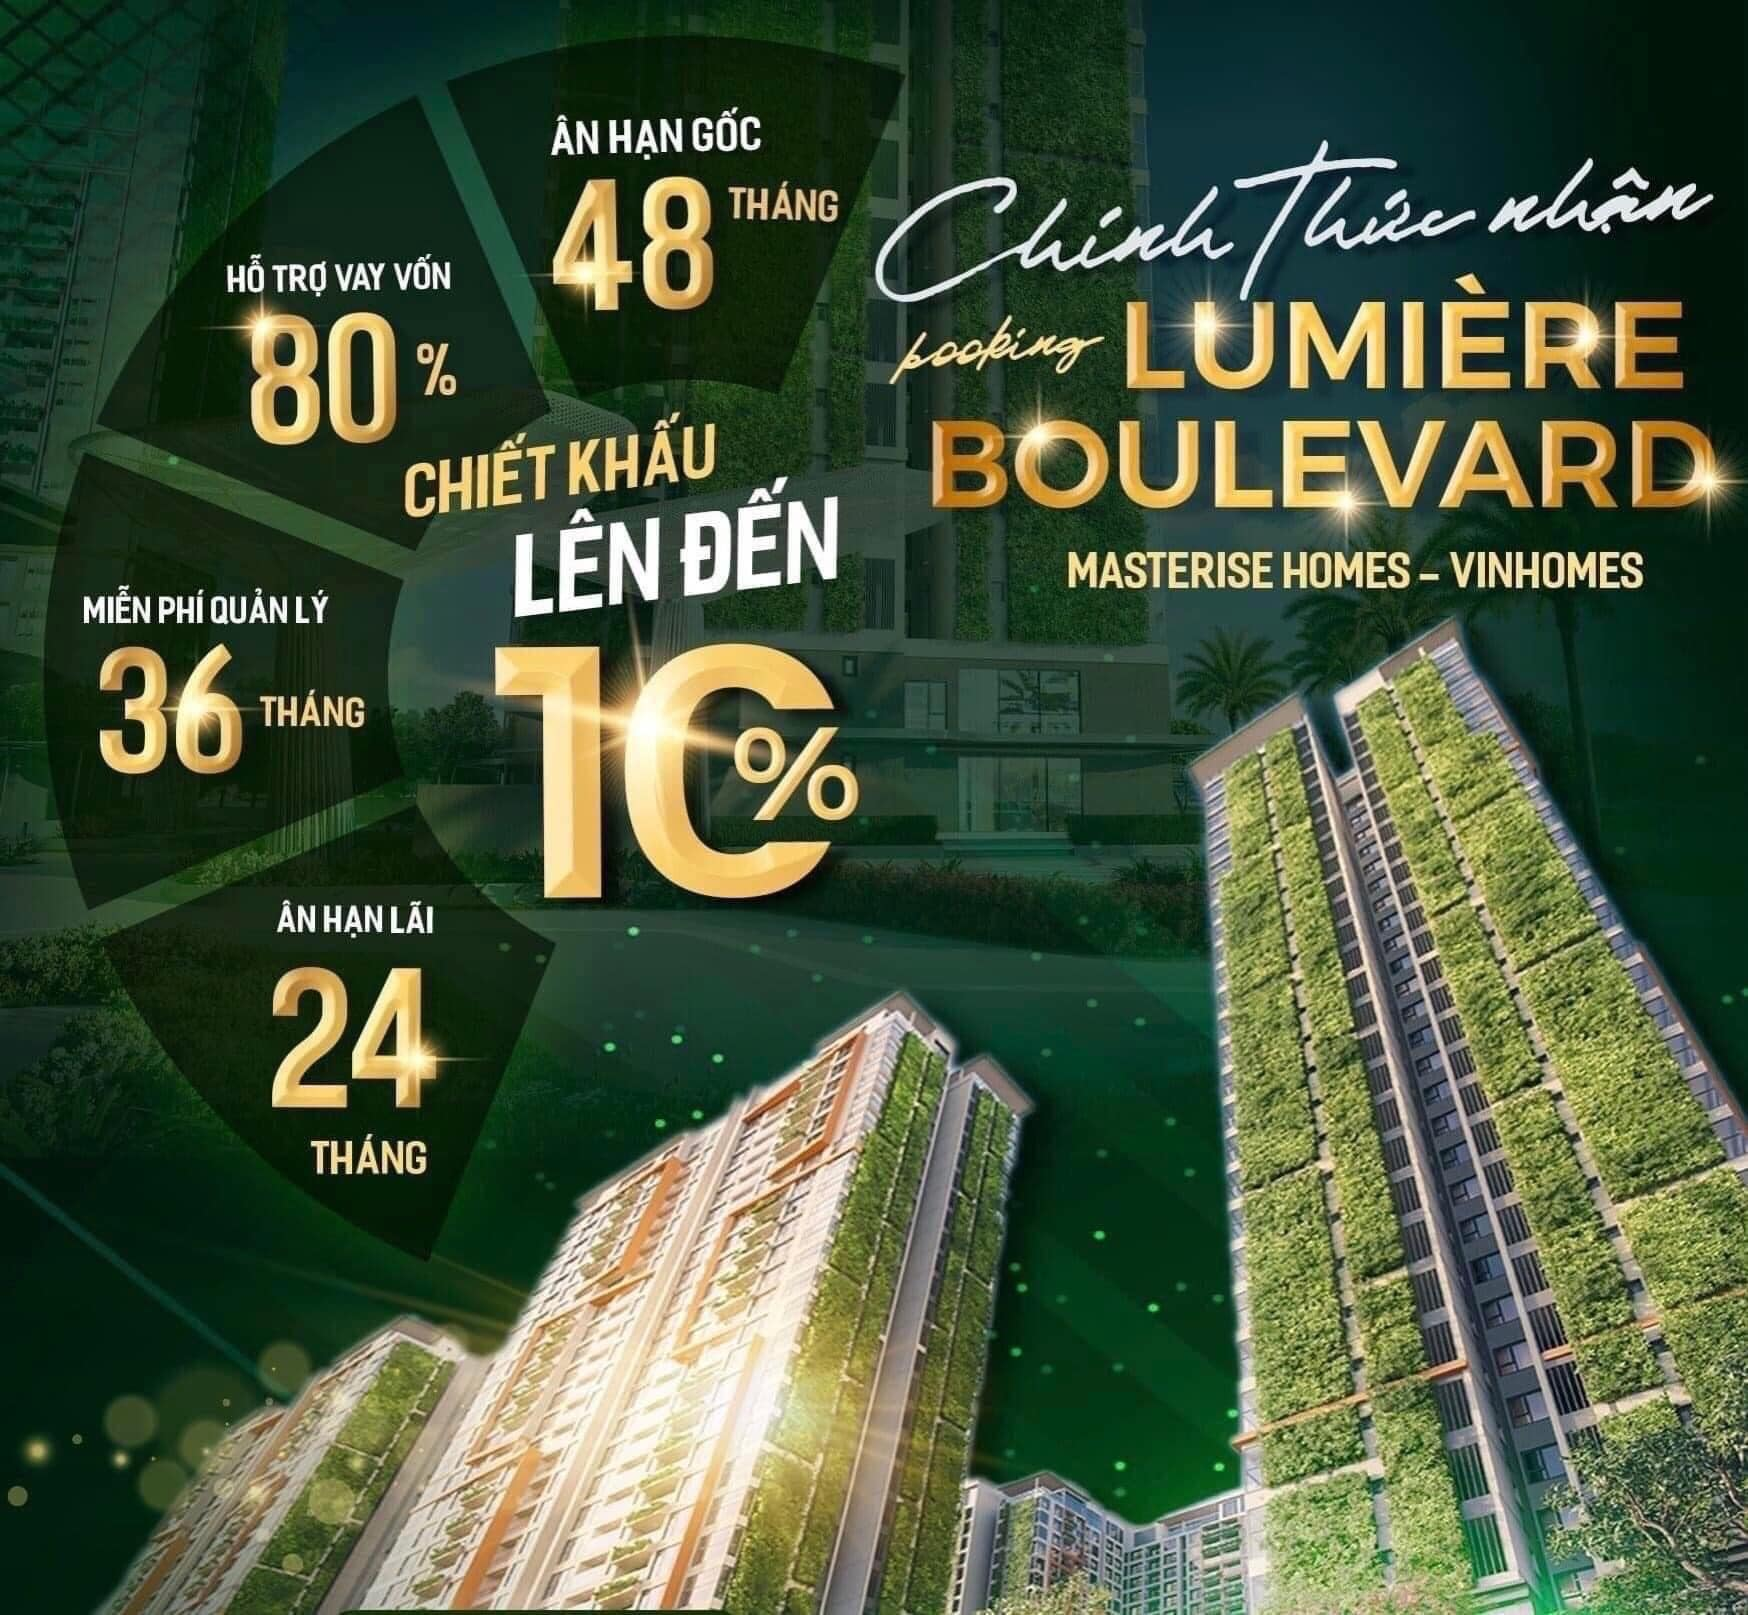 Chỉ với 375 triệu sở hữu ngay căn hộ của chủ đầu tư Masterise Homes. Dự án Lumiere Boulevard đẳng cấp quốc tế.